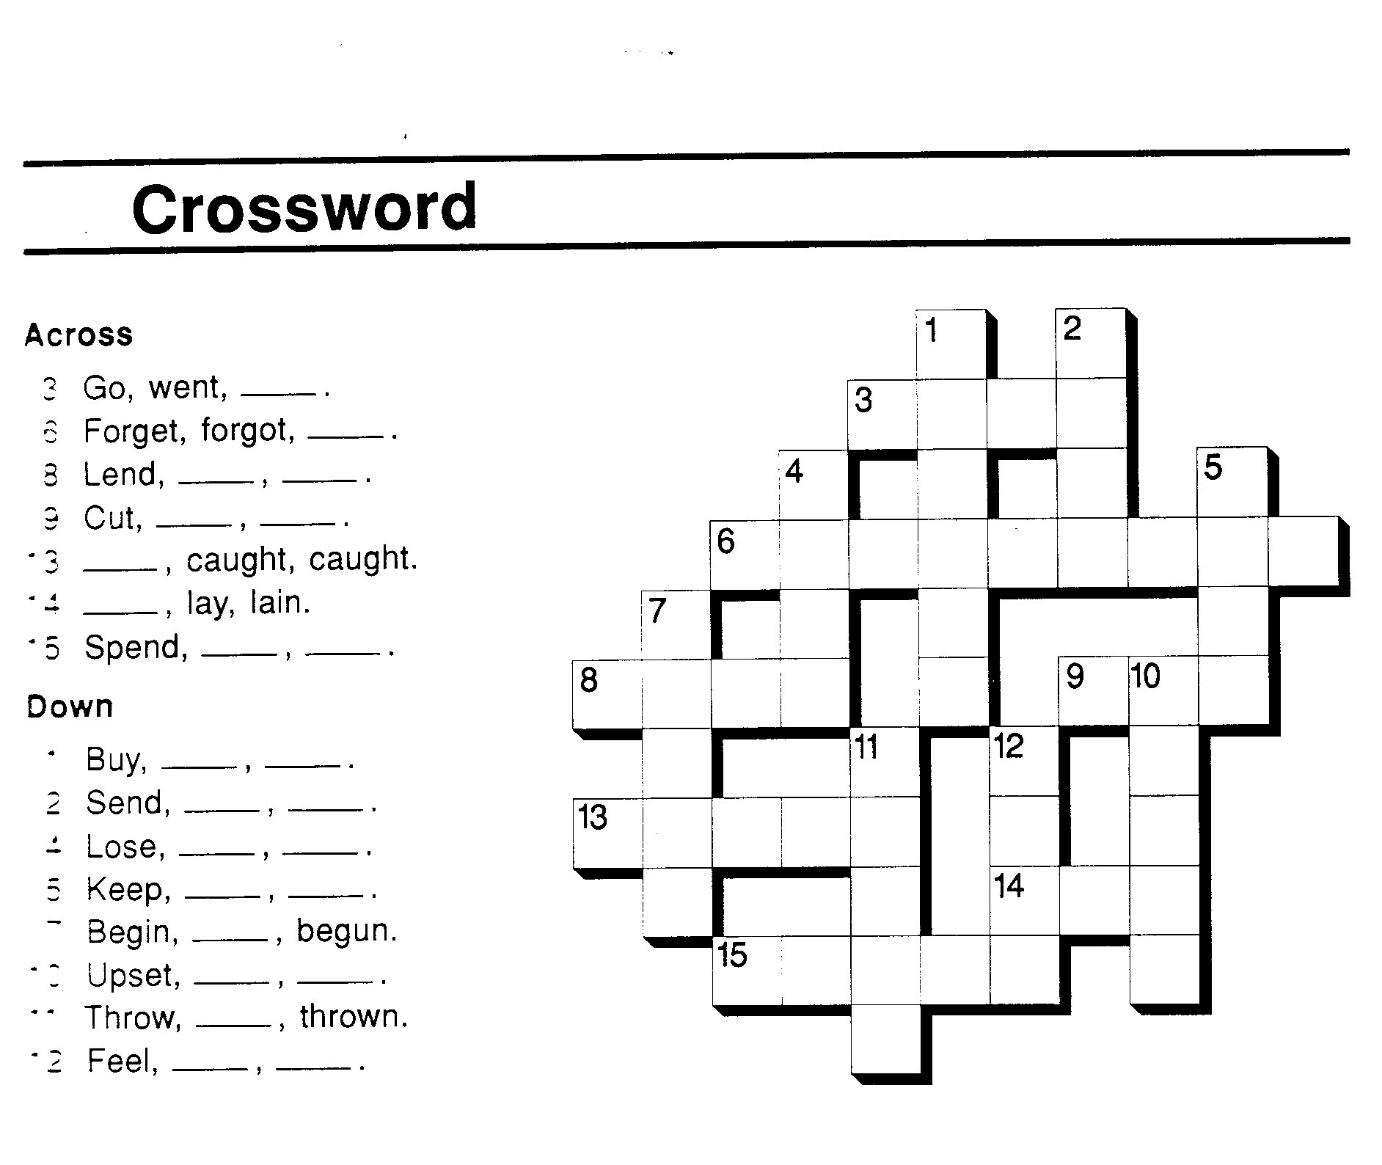 Кроссворд ответы глаголы. Кроссворд на тему неправильные глаголы. Кроссворд по английскому неправильные глаголы. Кроссворд по английскому языку по неправильным глаголам. Кроссворд неправильные глаголы английского языка.